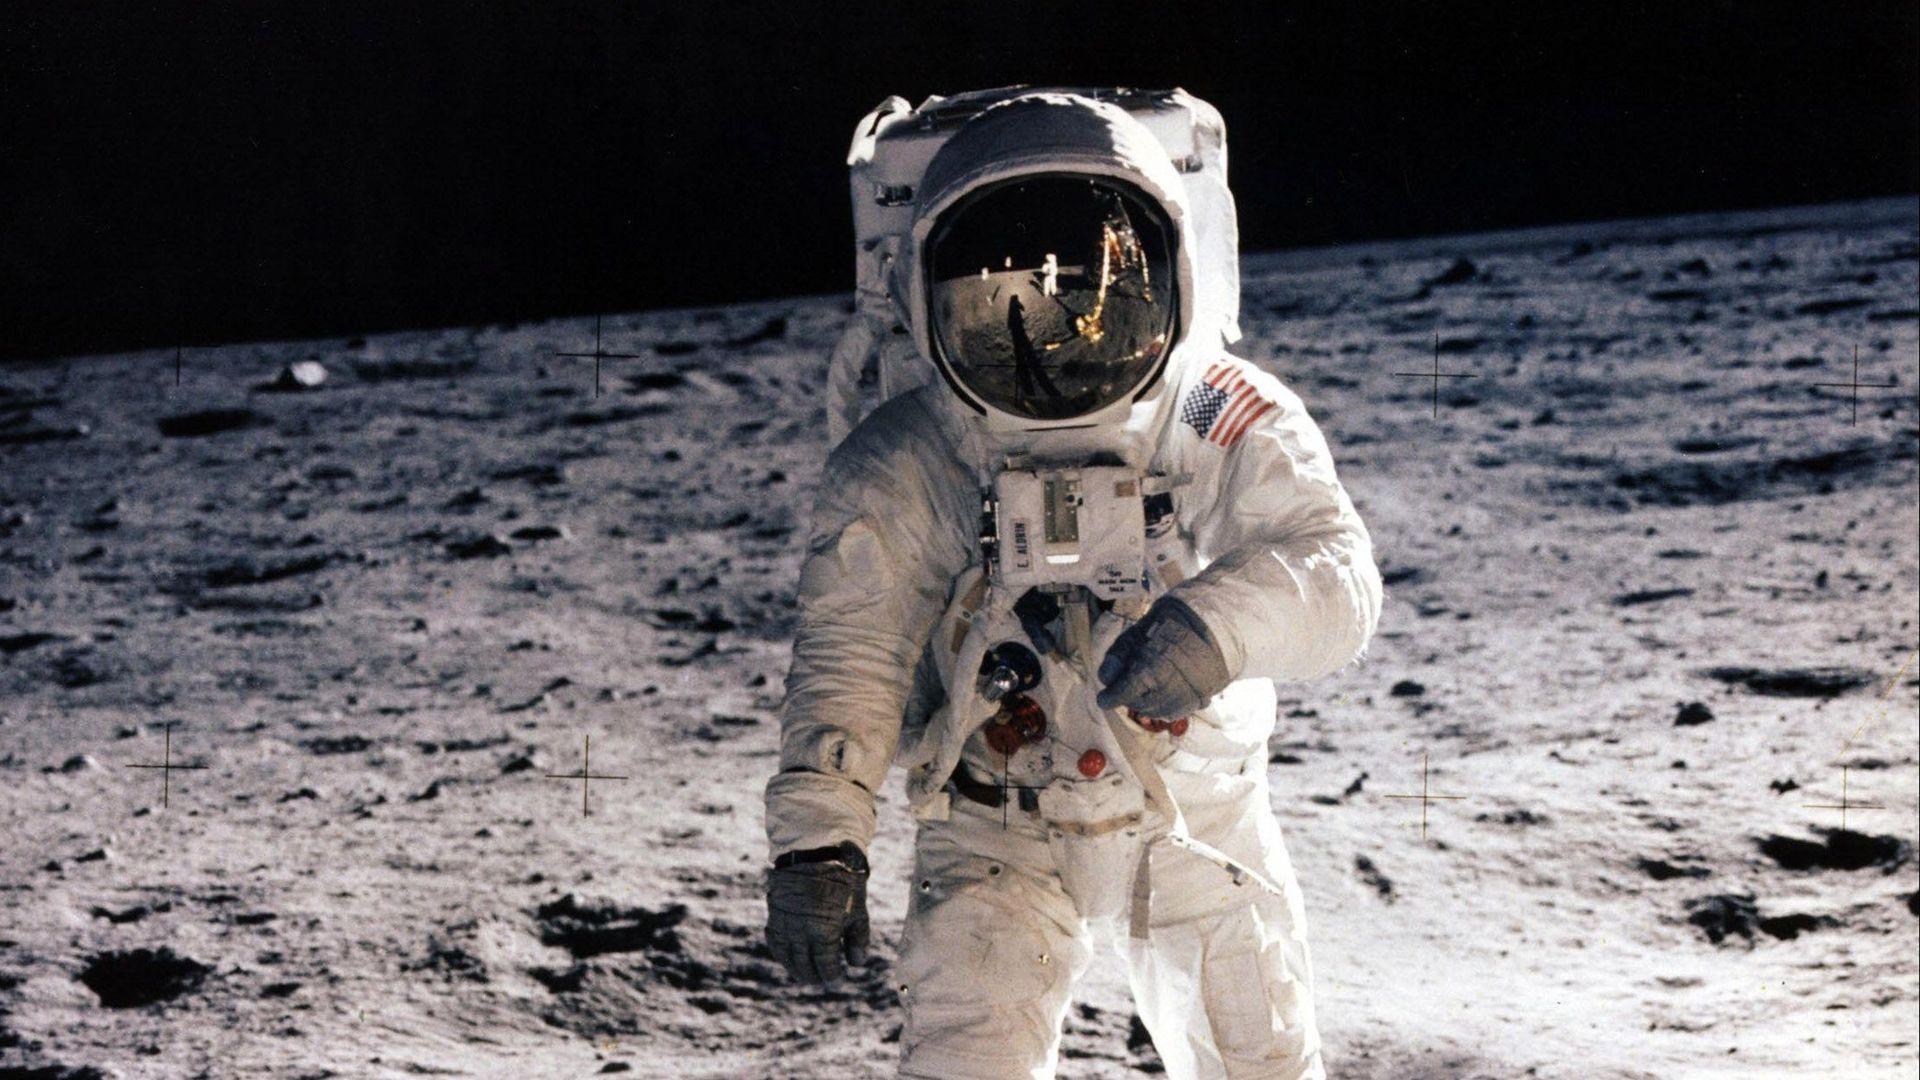 Les astronautes d'Apollo 11 ont décollé il y a 50 ans aujourd'hui